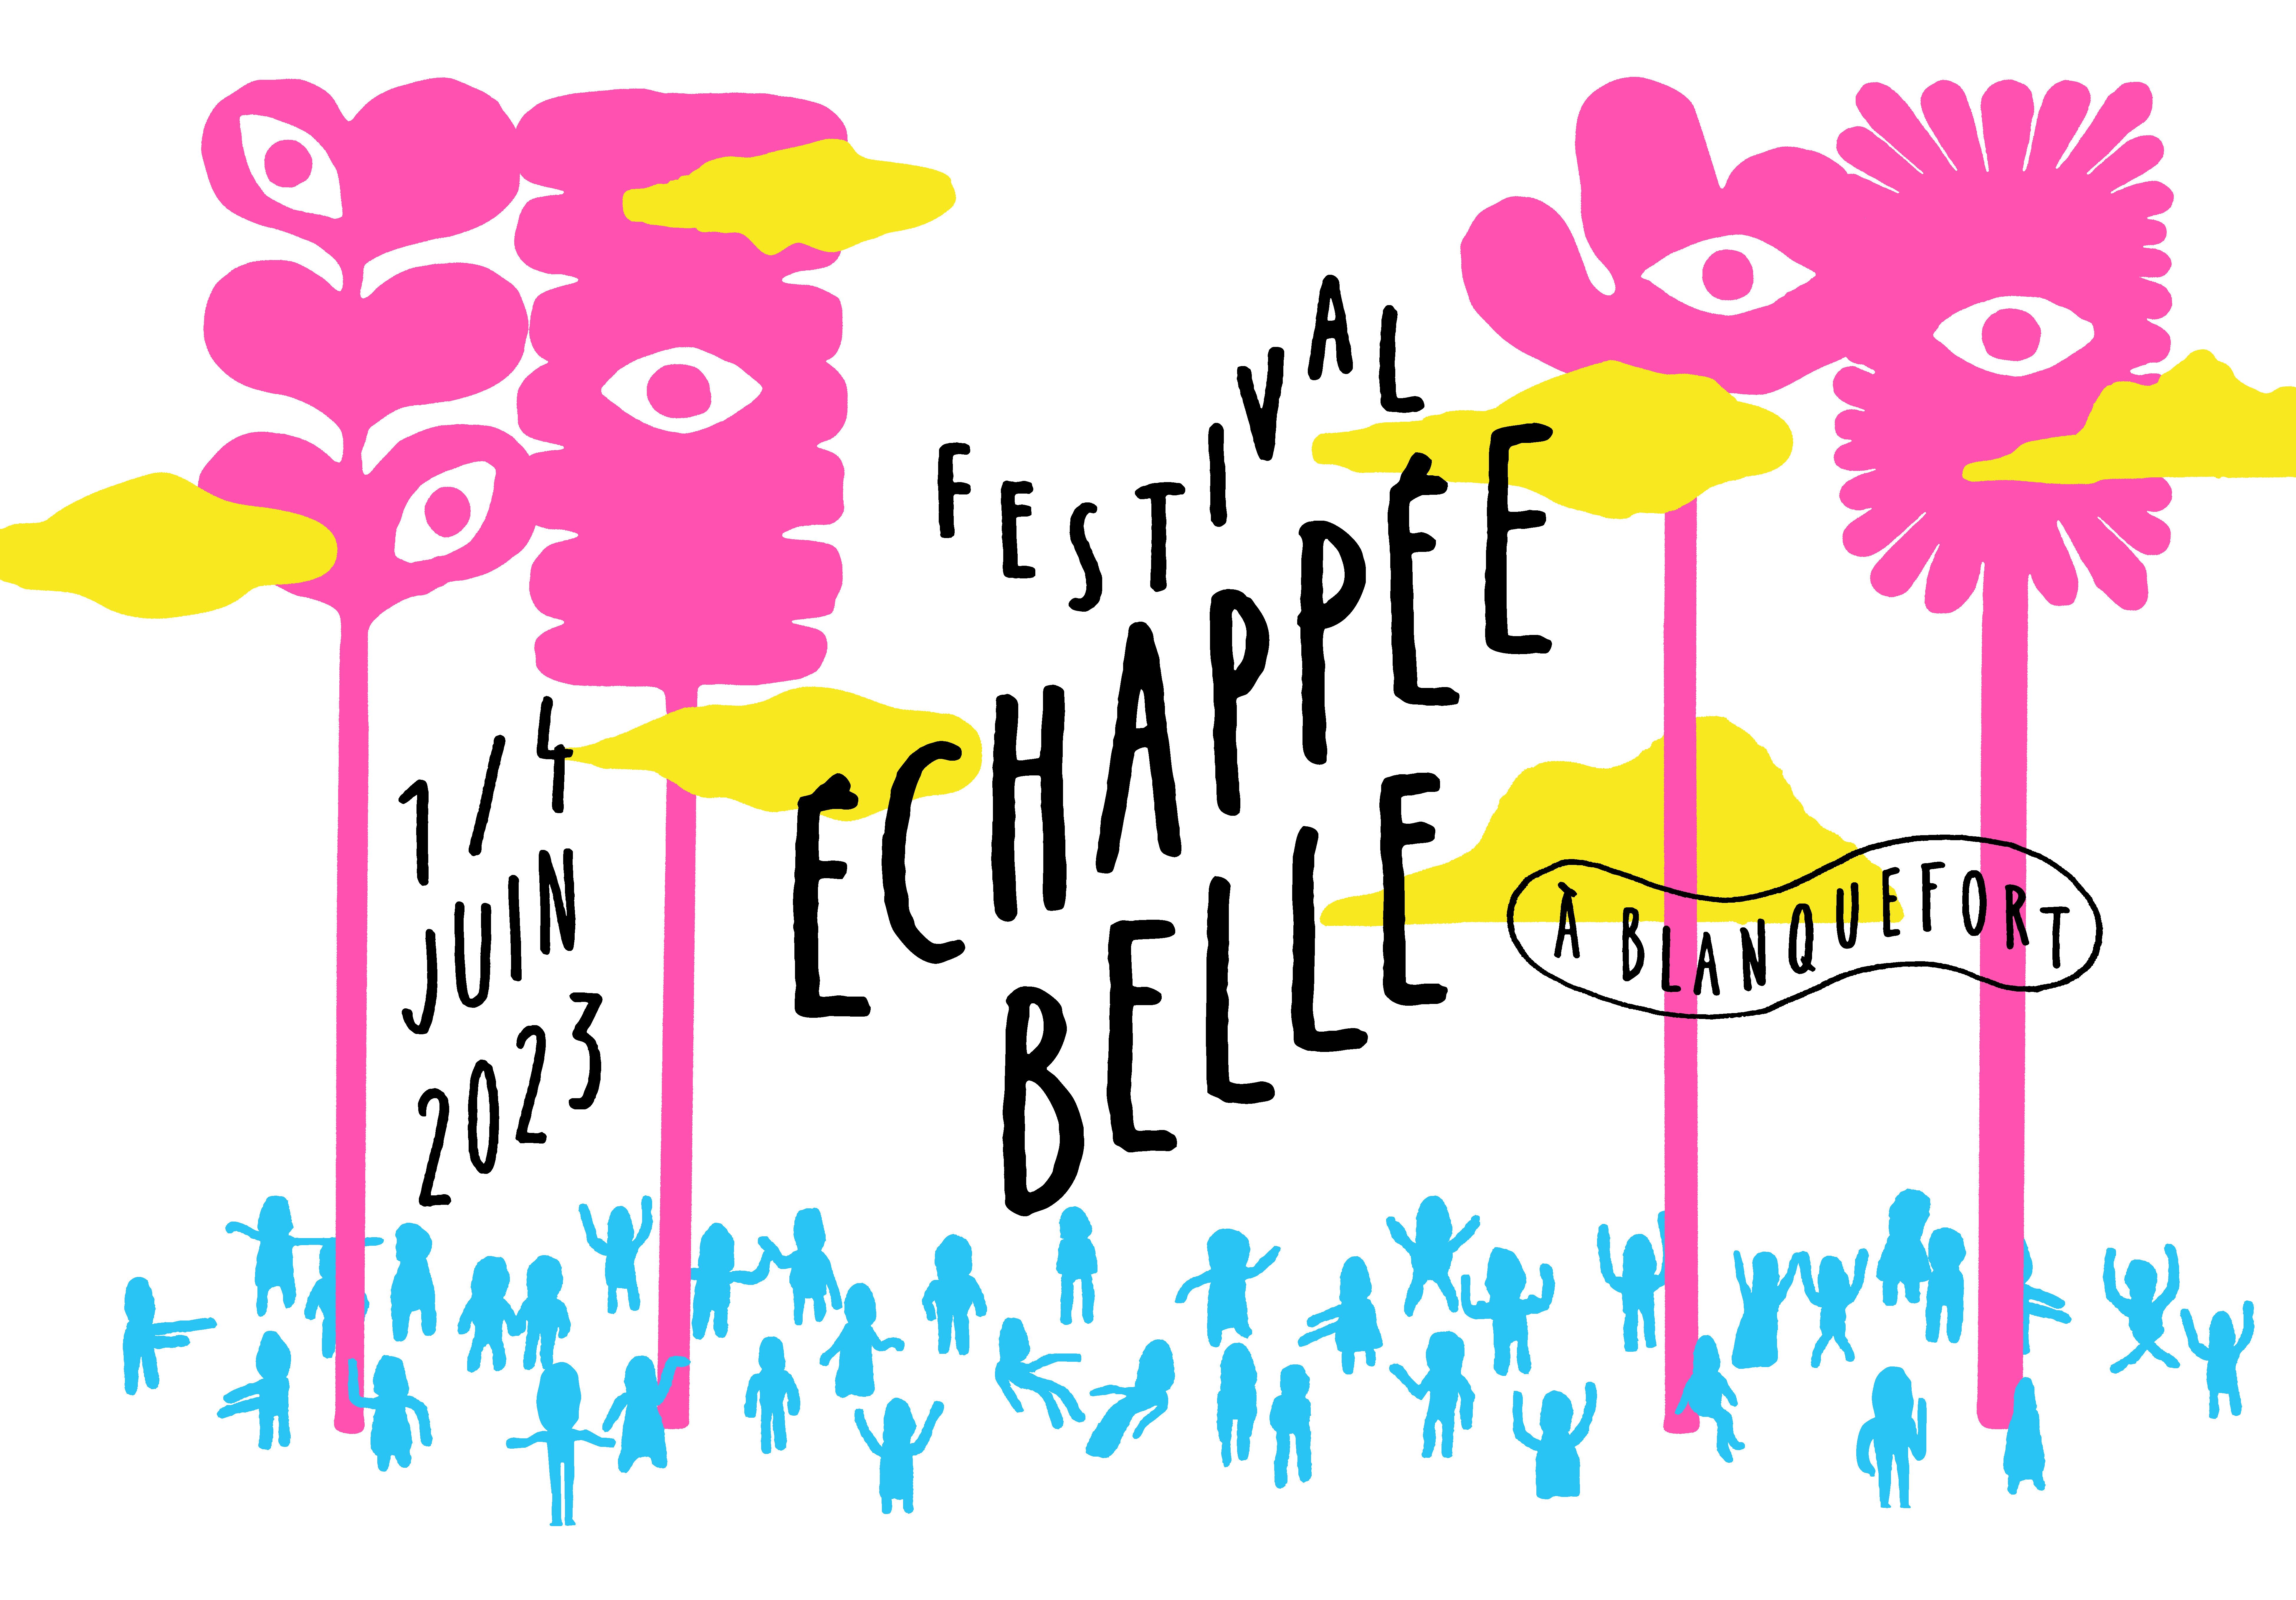 Le festival Échappée Belle de retour à Blanquefort